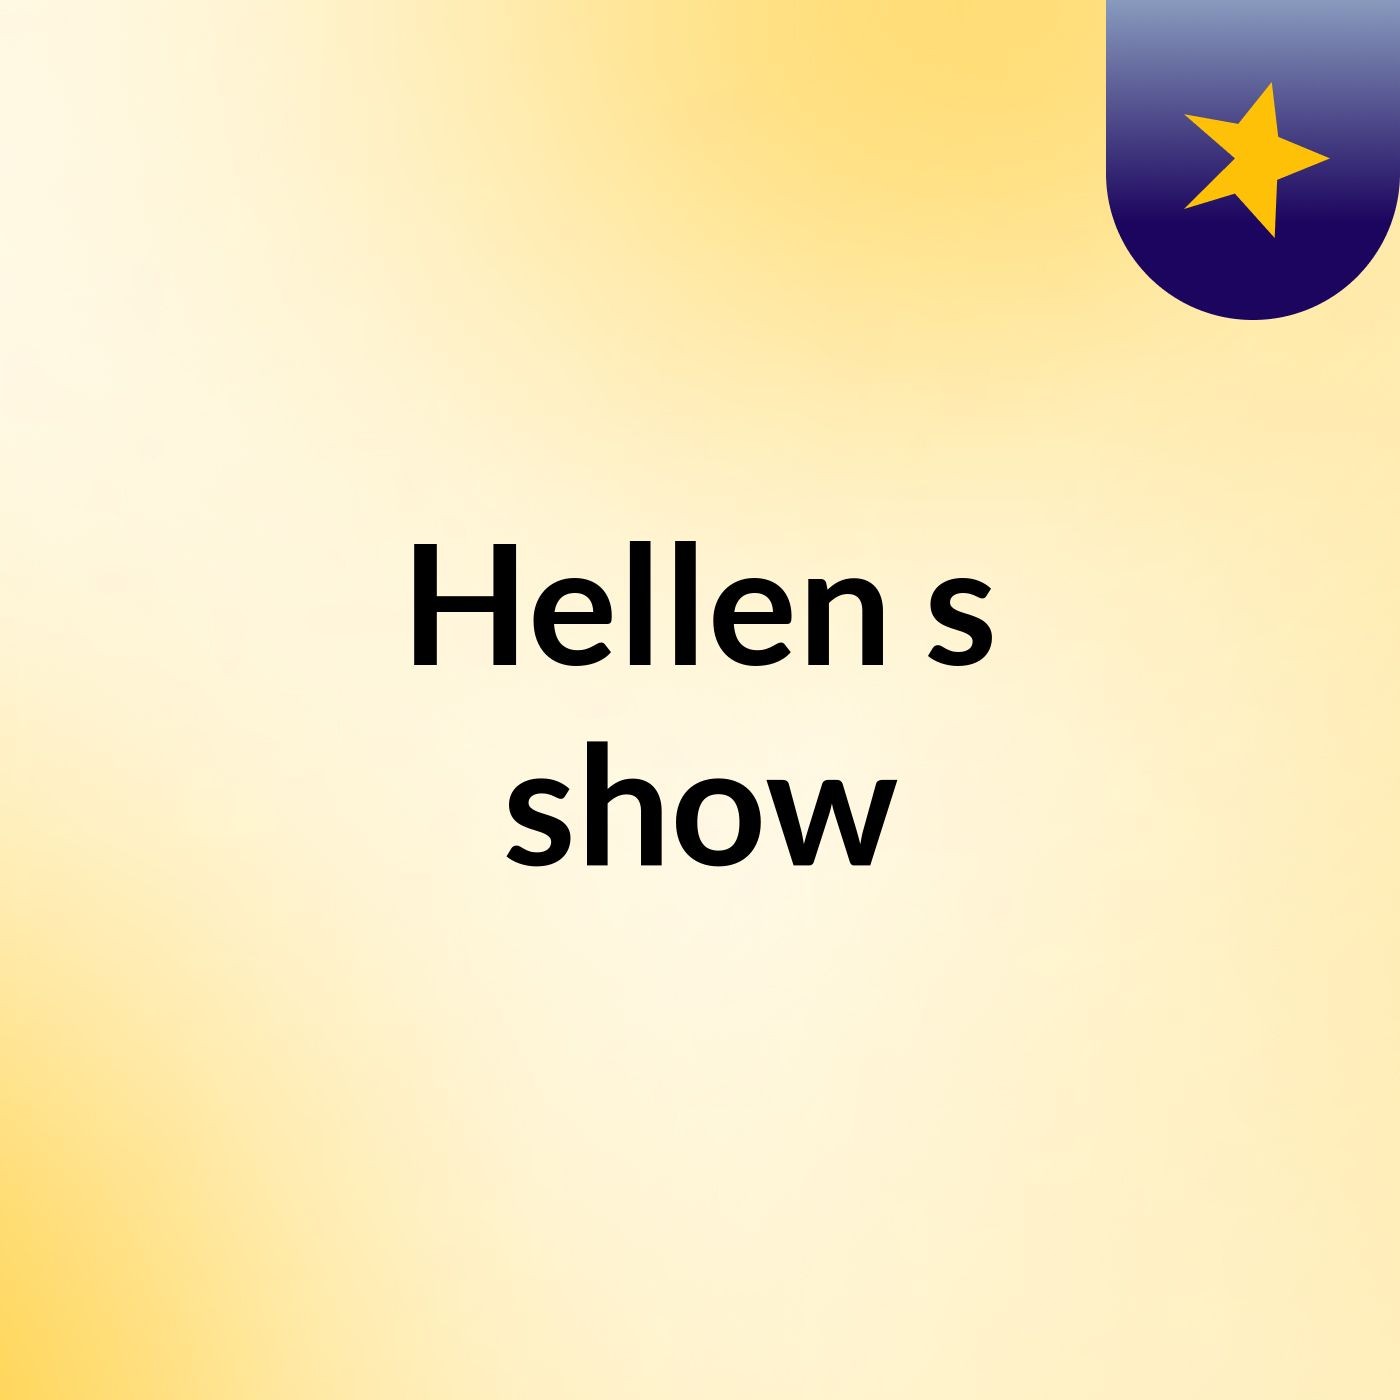 Hellen's show